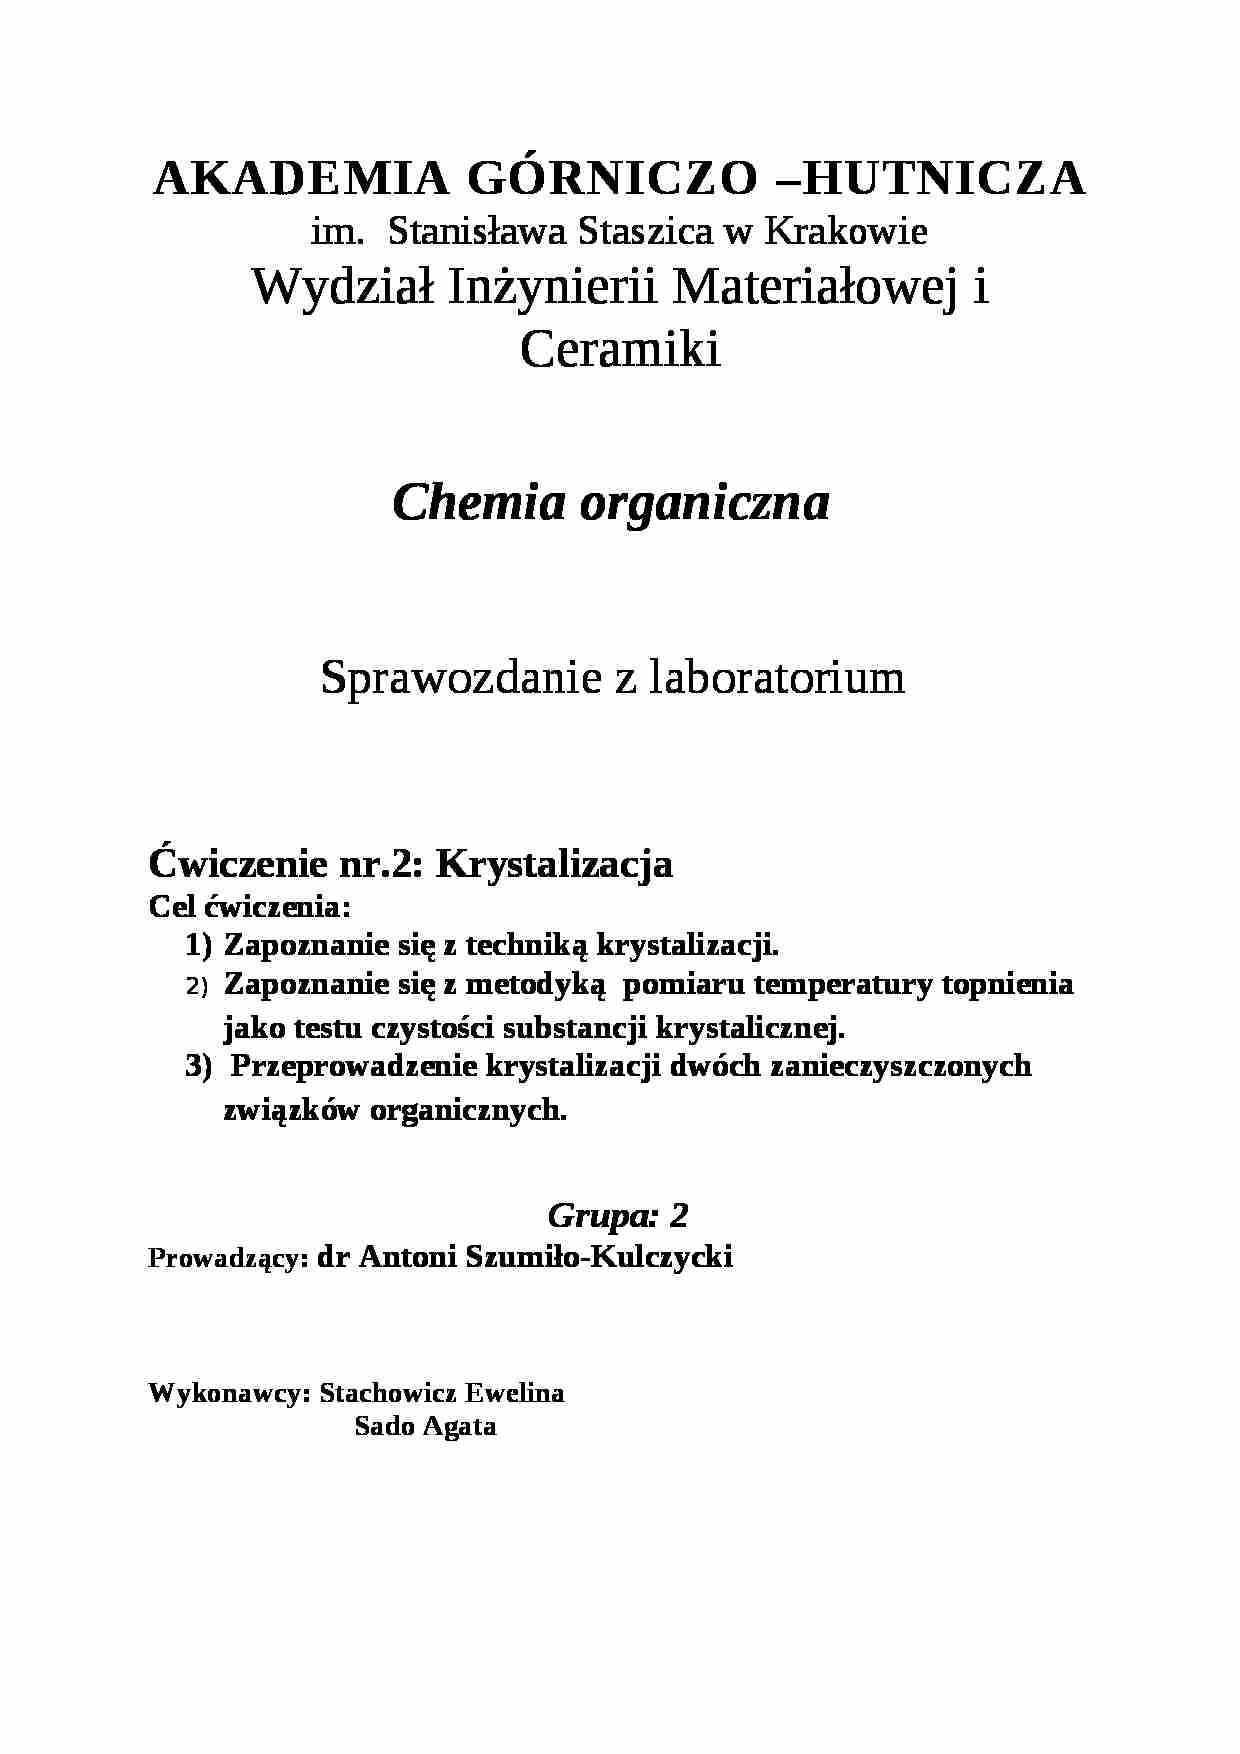 Chemia organiczna - sprawozdanie - krystalizacja - strona 1